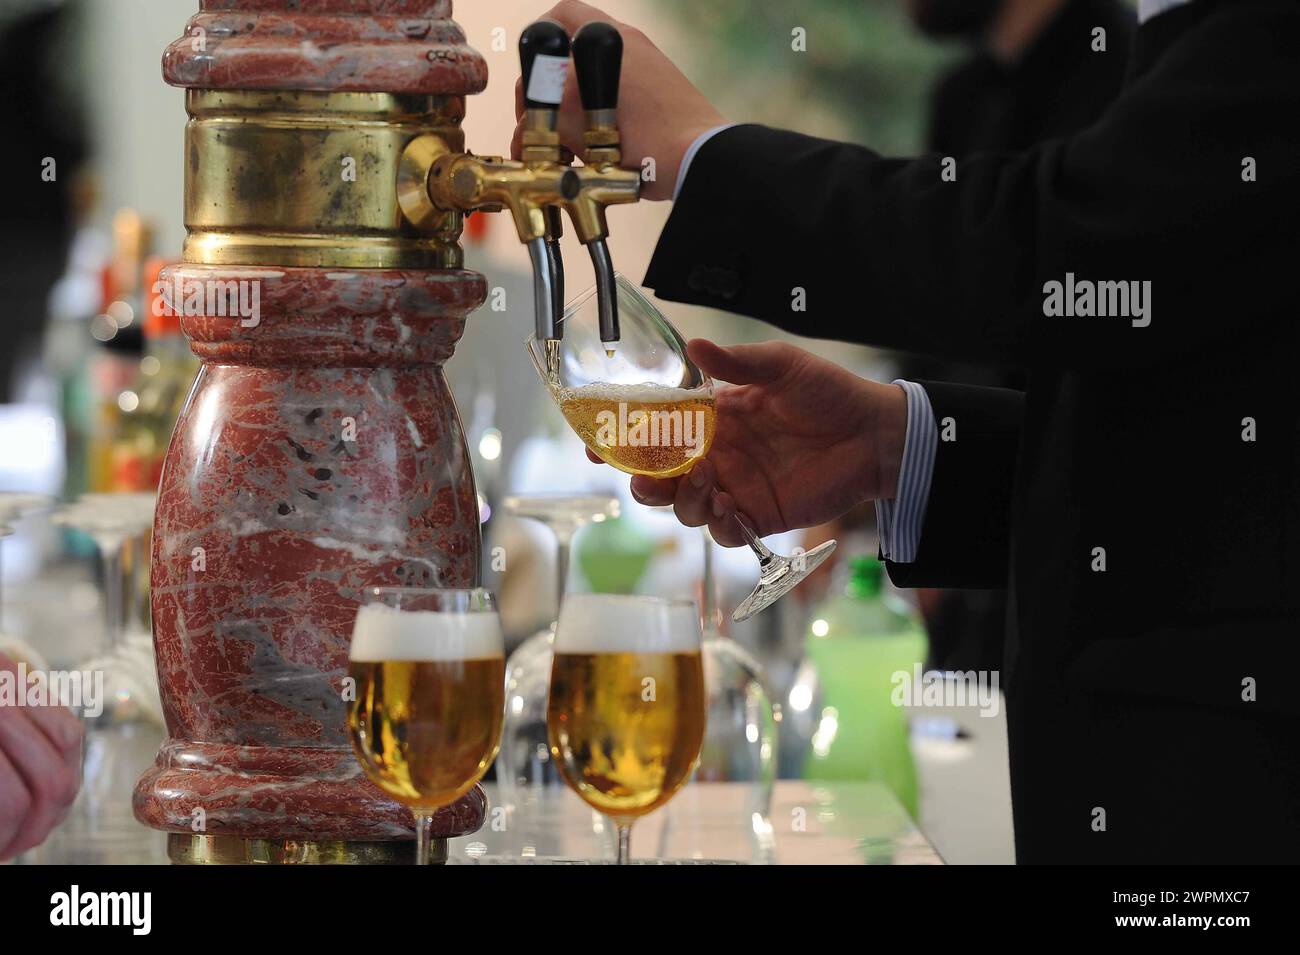 Glass of draft beer/boccale di birra alla spina Stock Photo